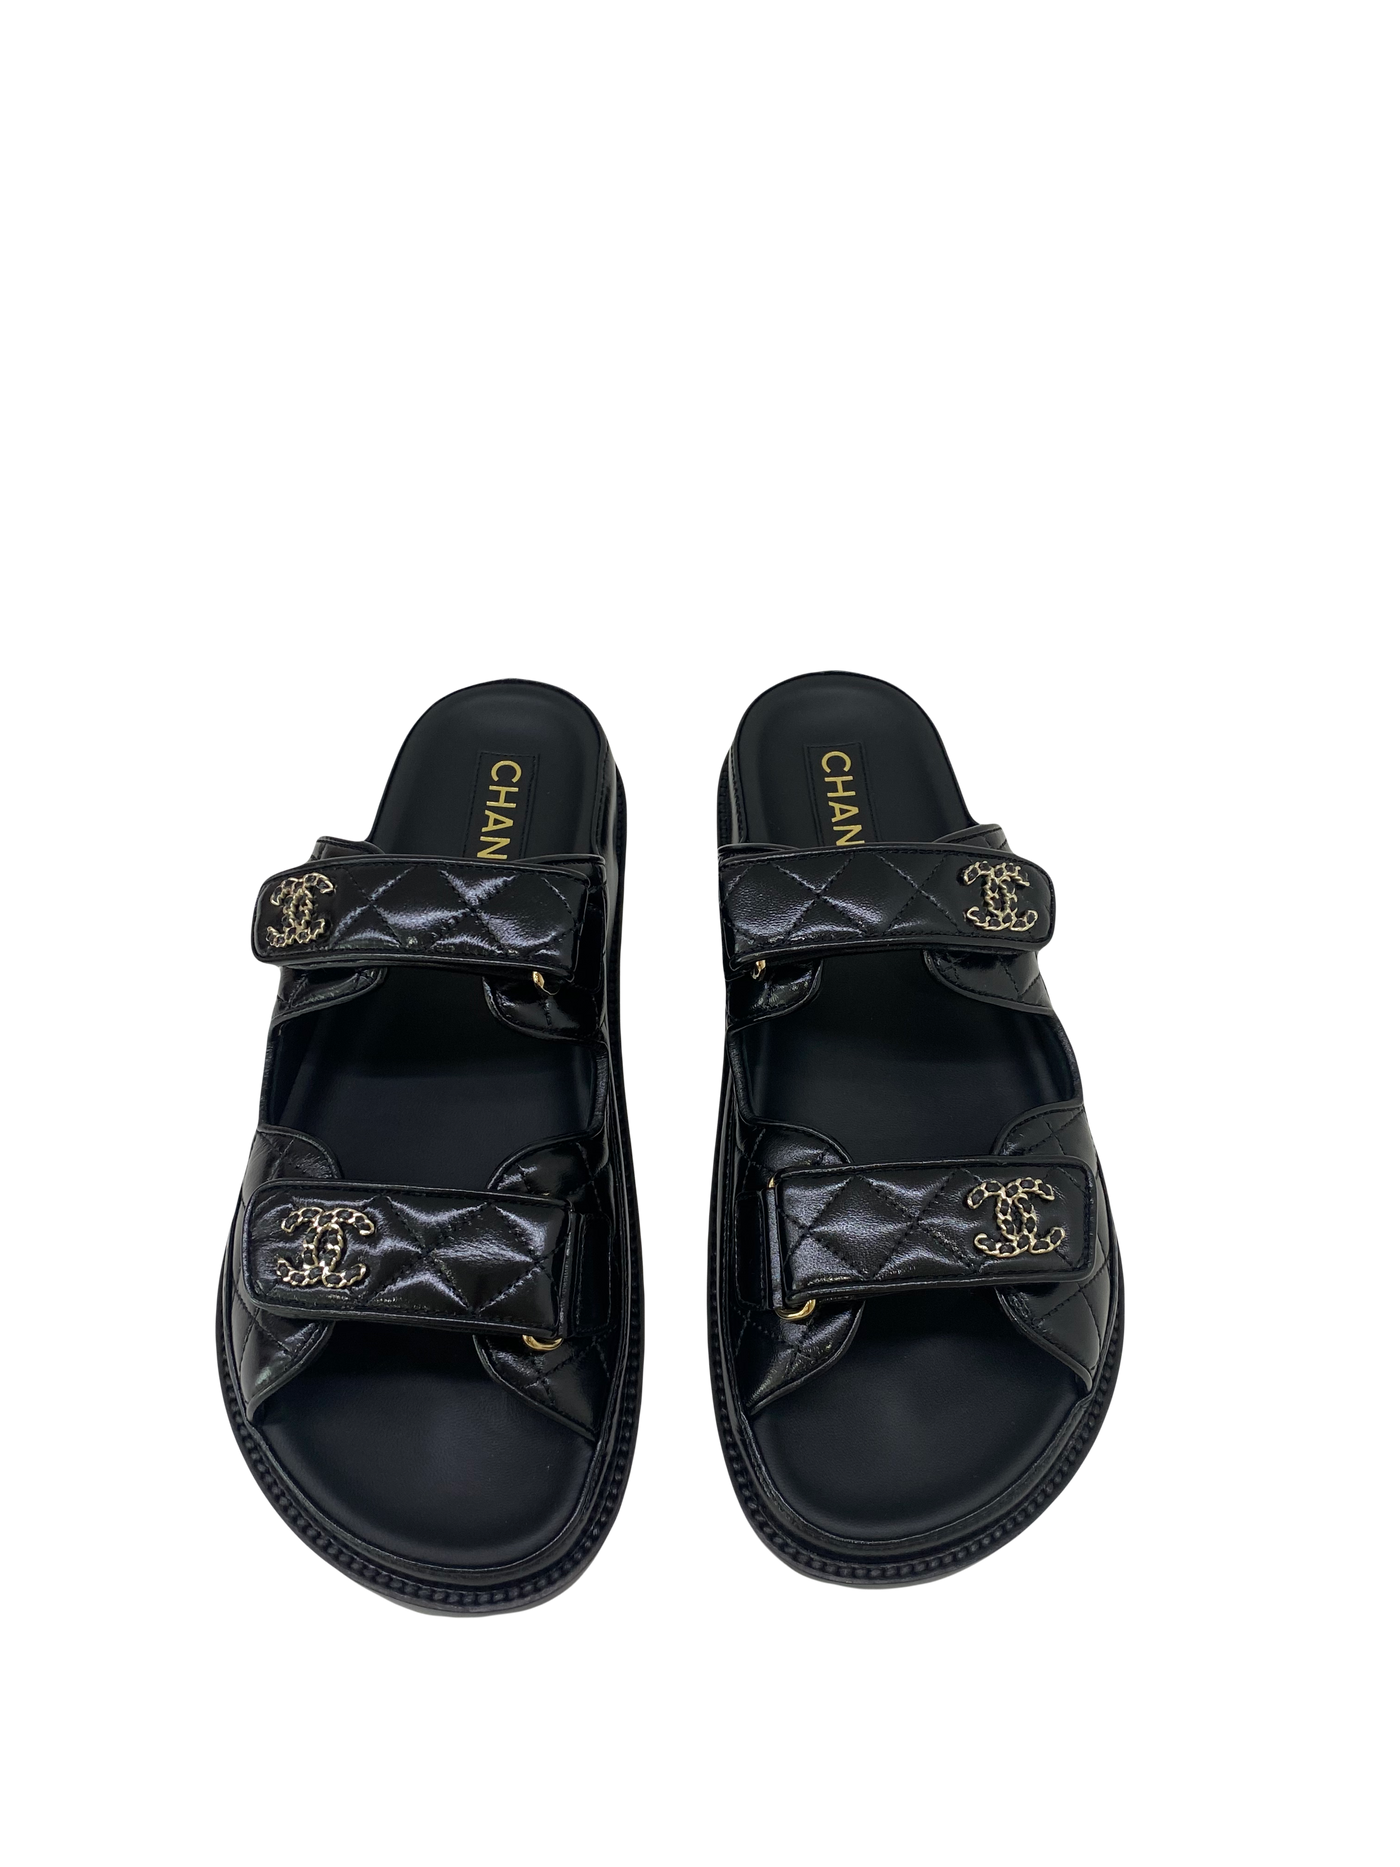 Copy of Chanel Dad Sandal Slide Black 41.5